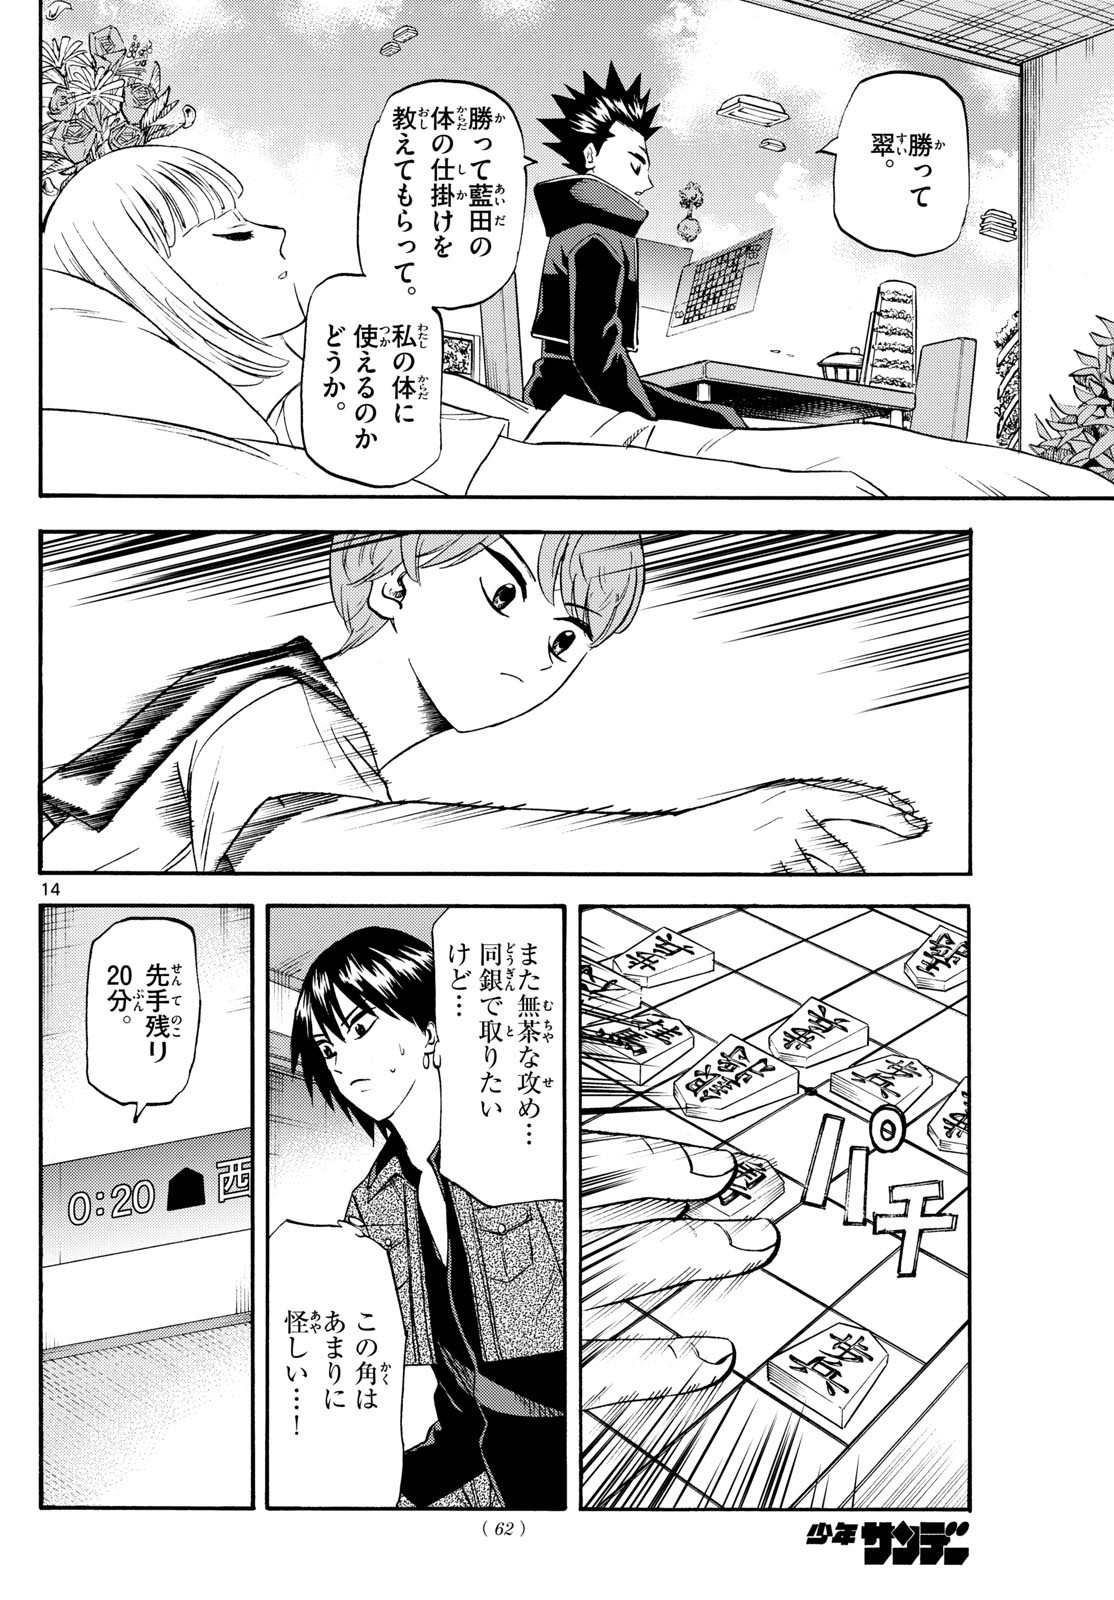 Ryu-to-Ichigo - Chapter 194 - Page 14